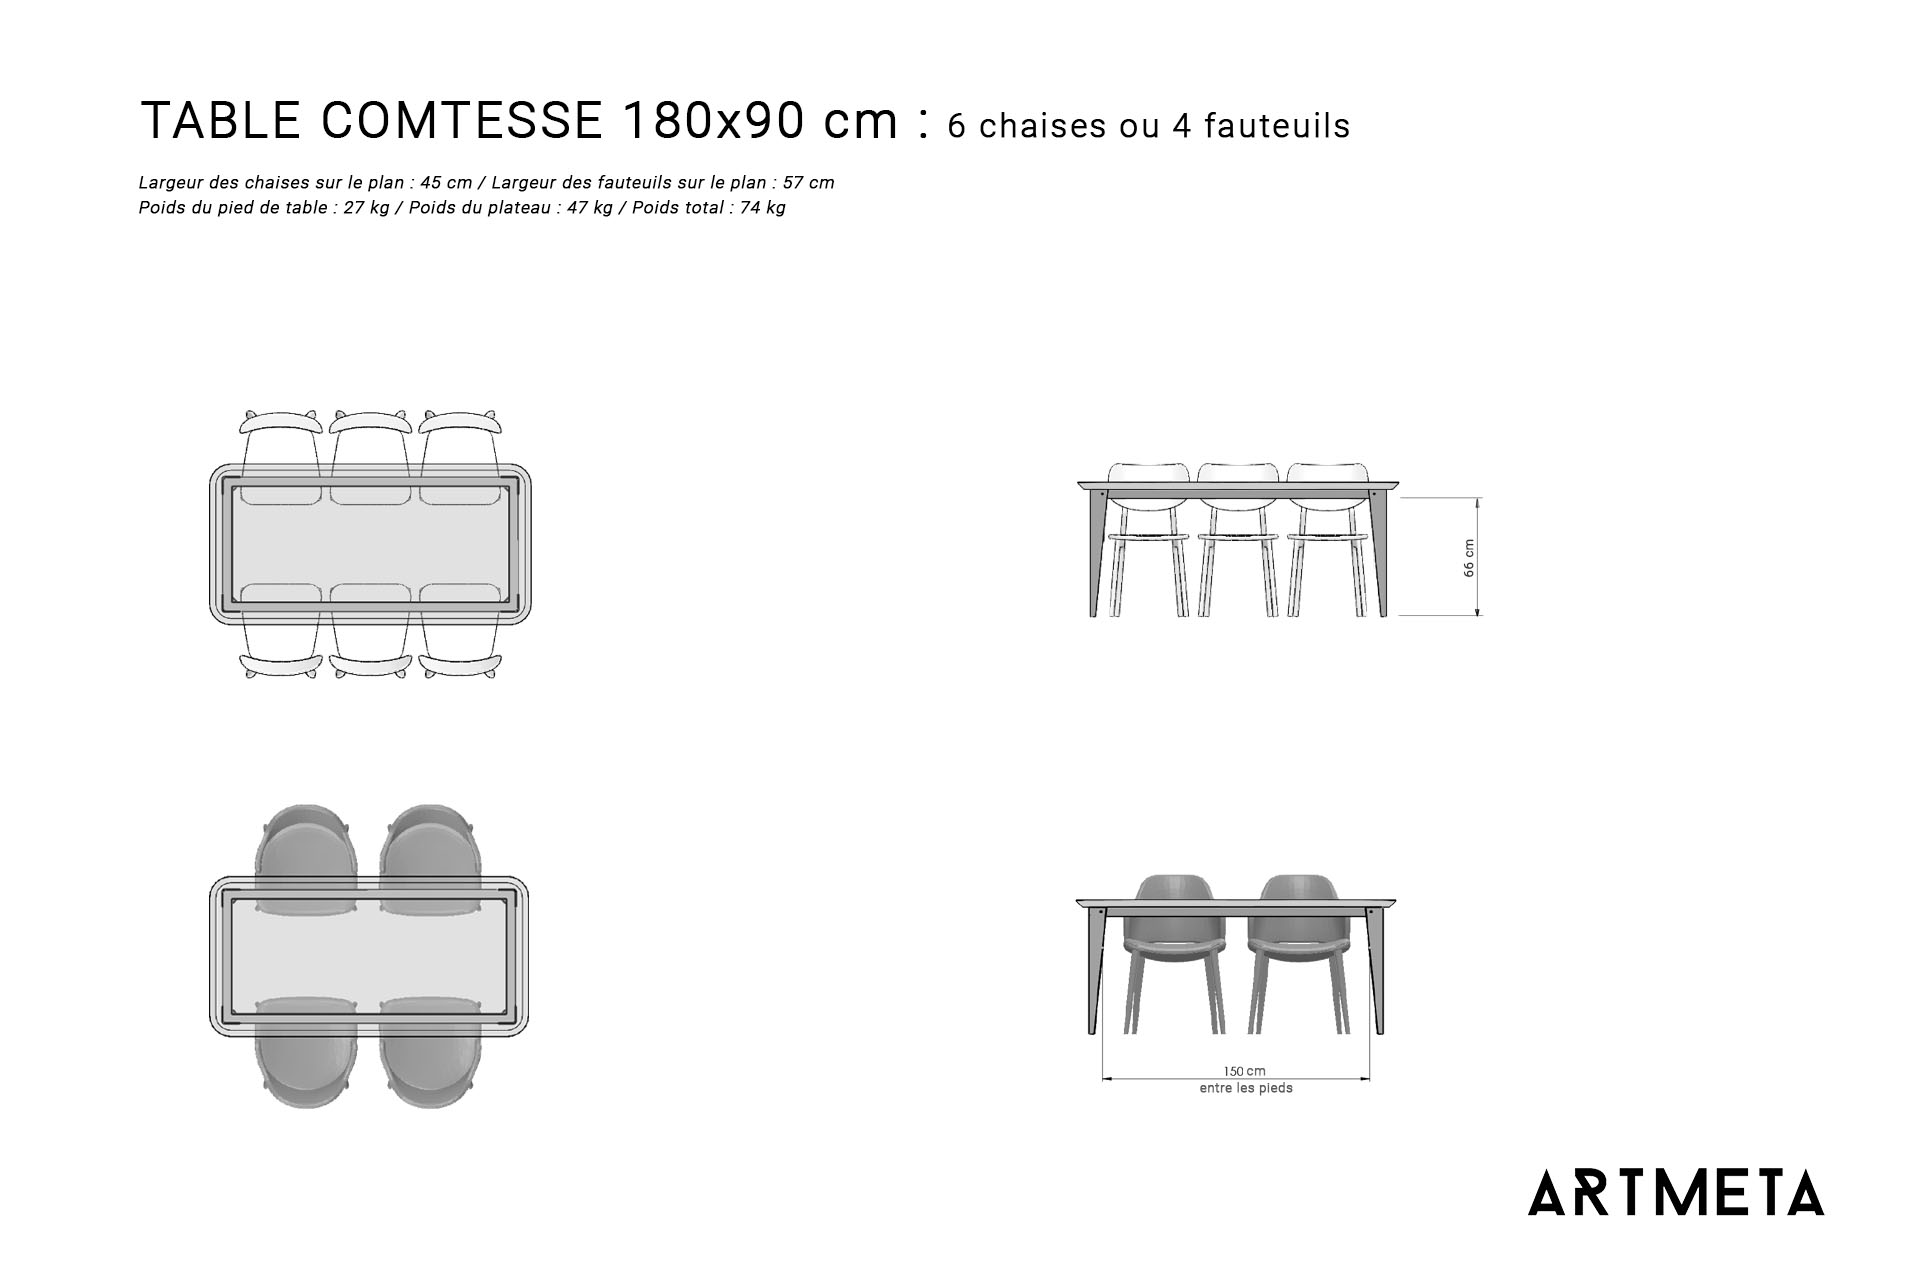 Guide des dimensions / Table à manger pour 6 personnes / Table en métal et bois modèle Comtesse / Fabrication française ARTMETA